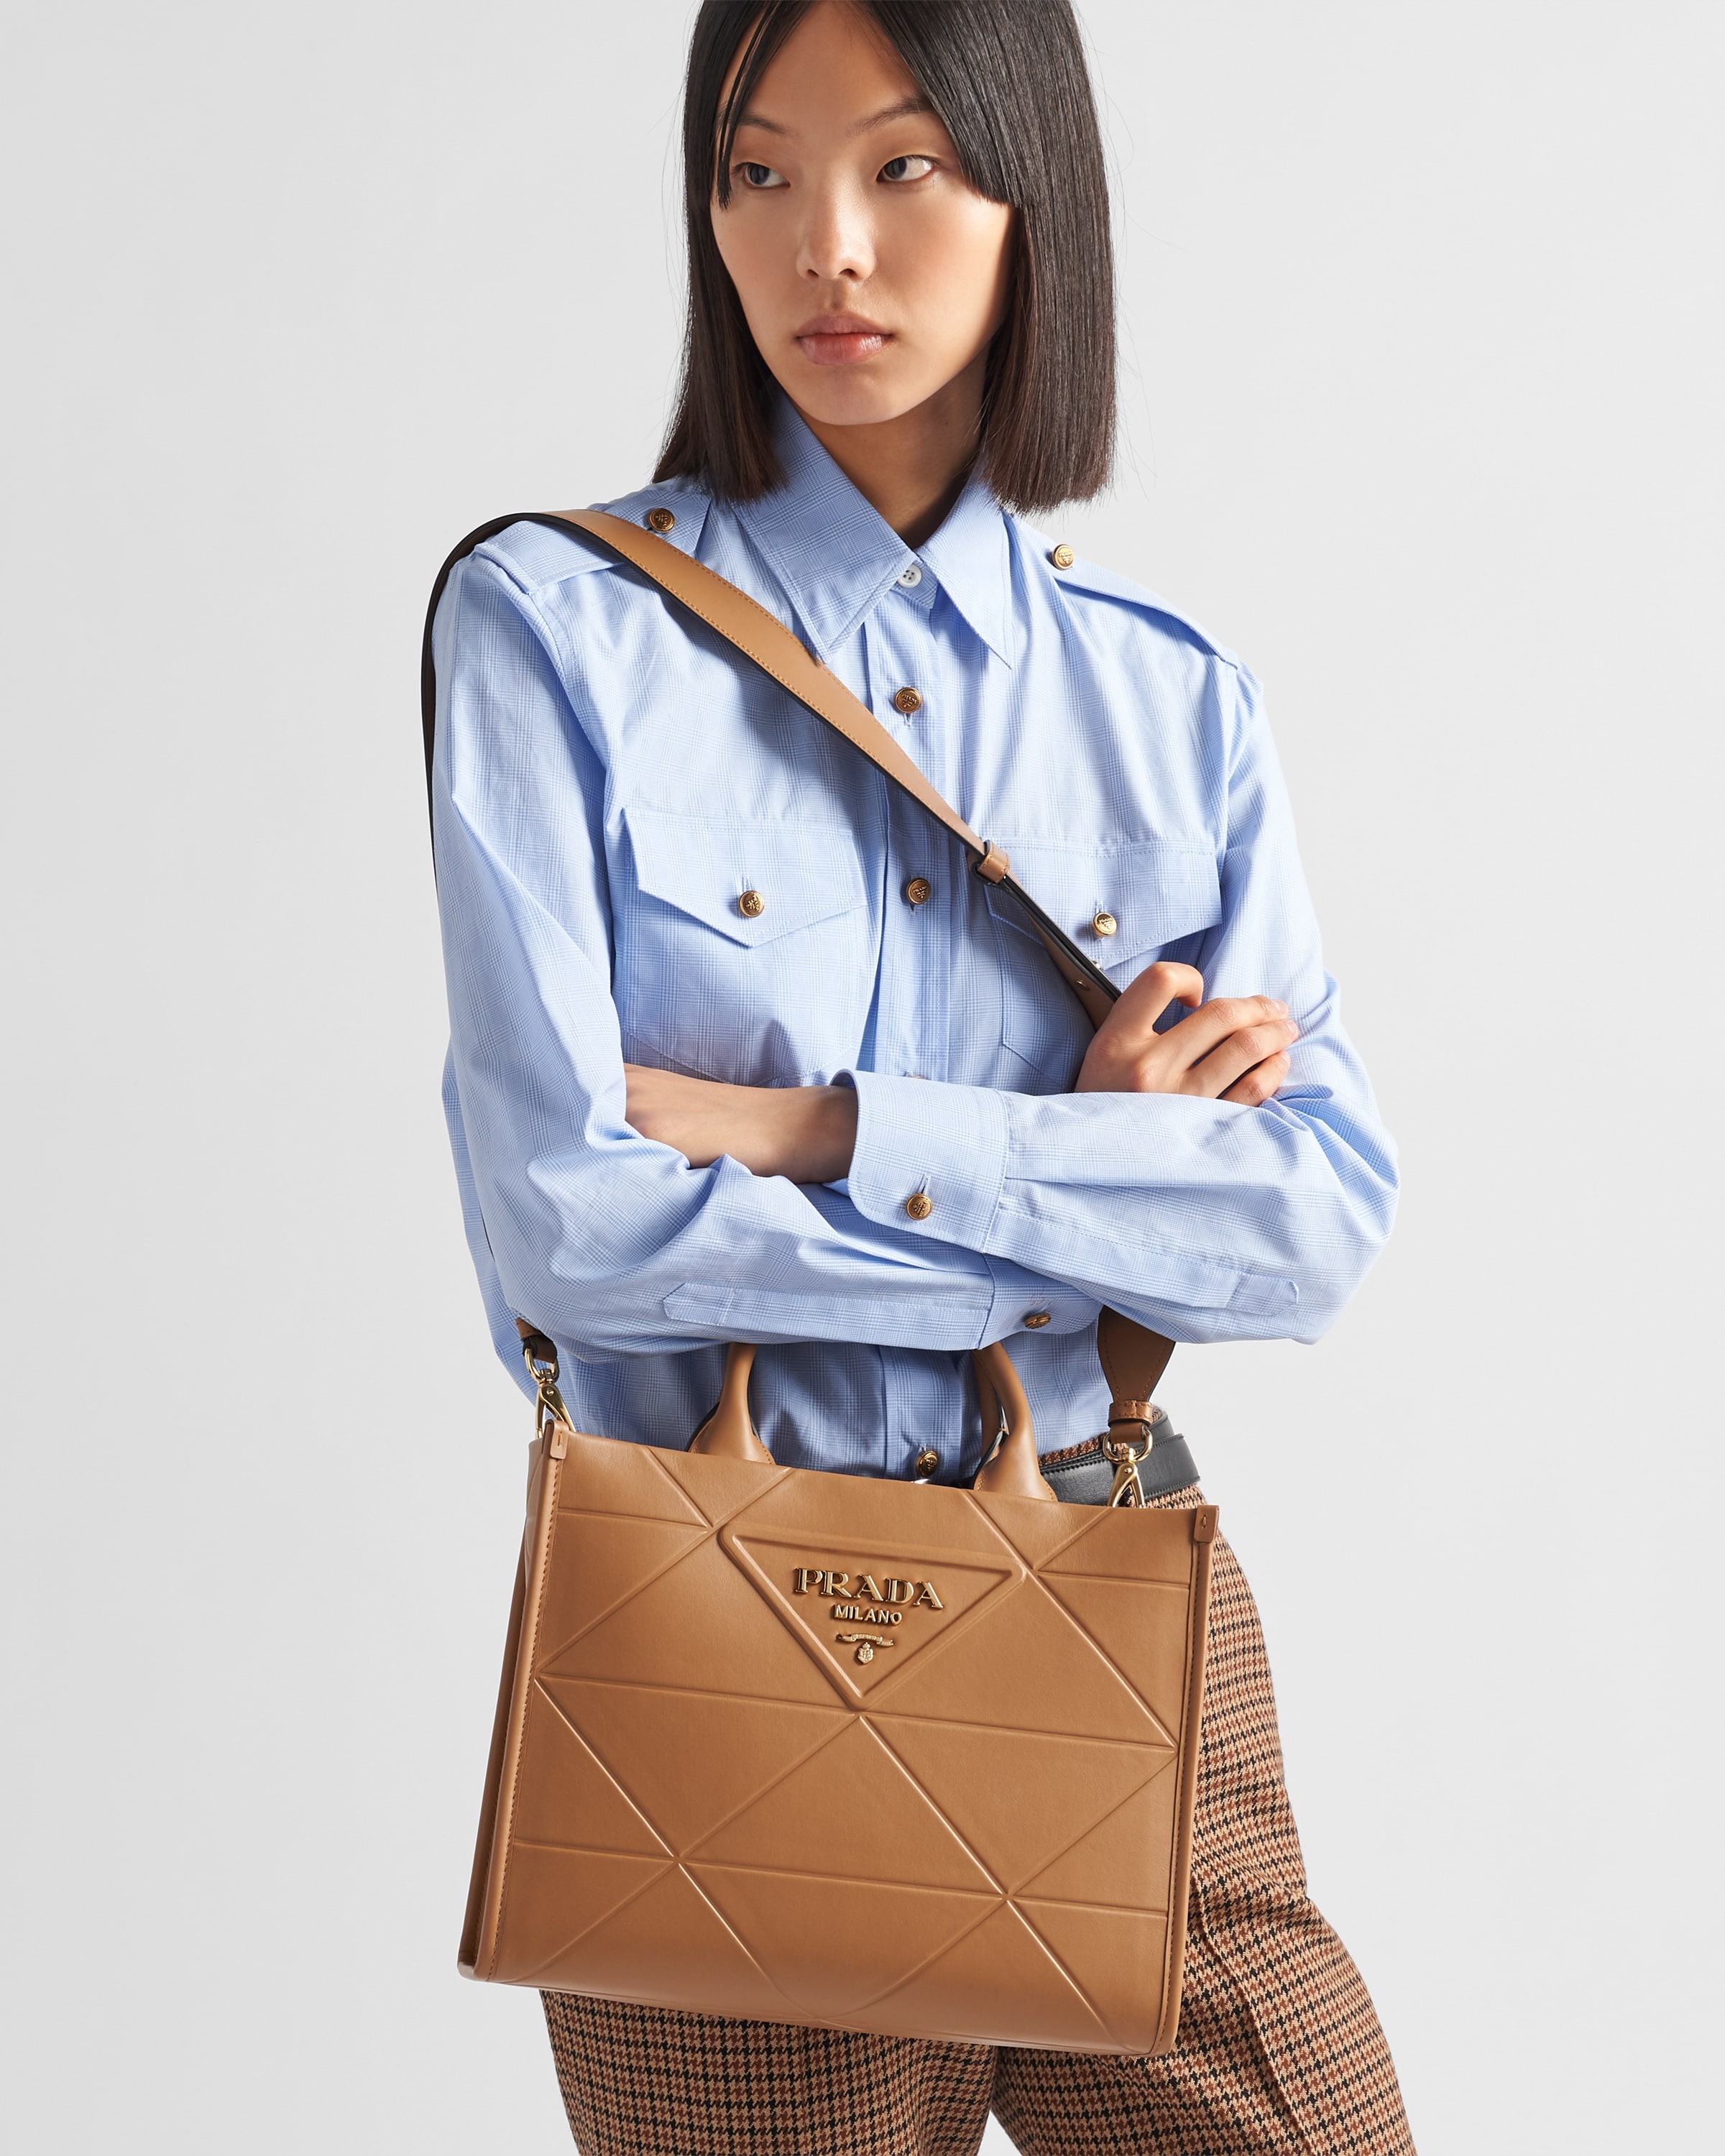 Prada Prada Galleria Medium Saffiano Leather Top Handle Bag (Top